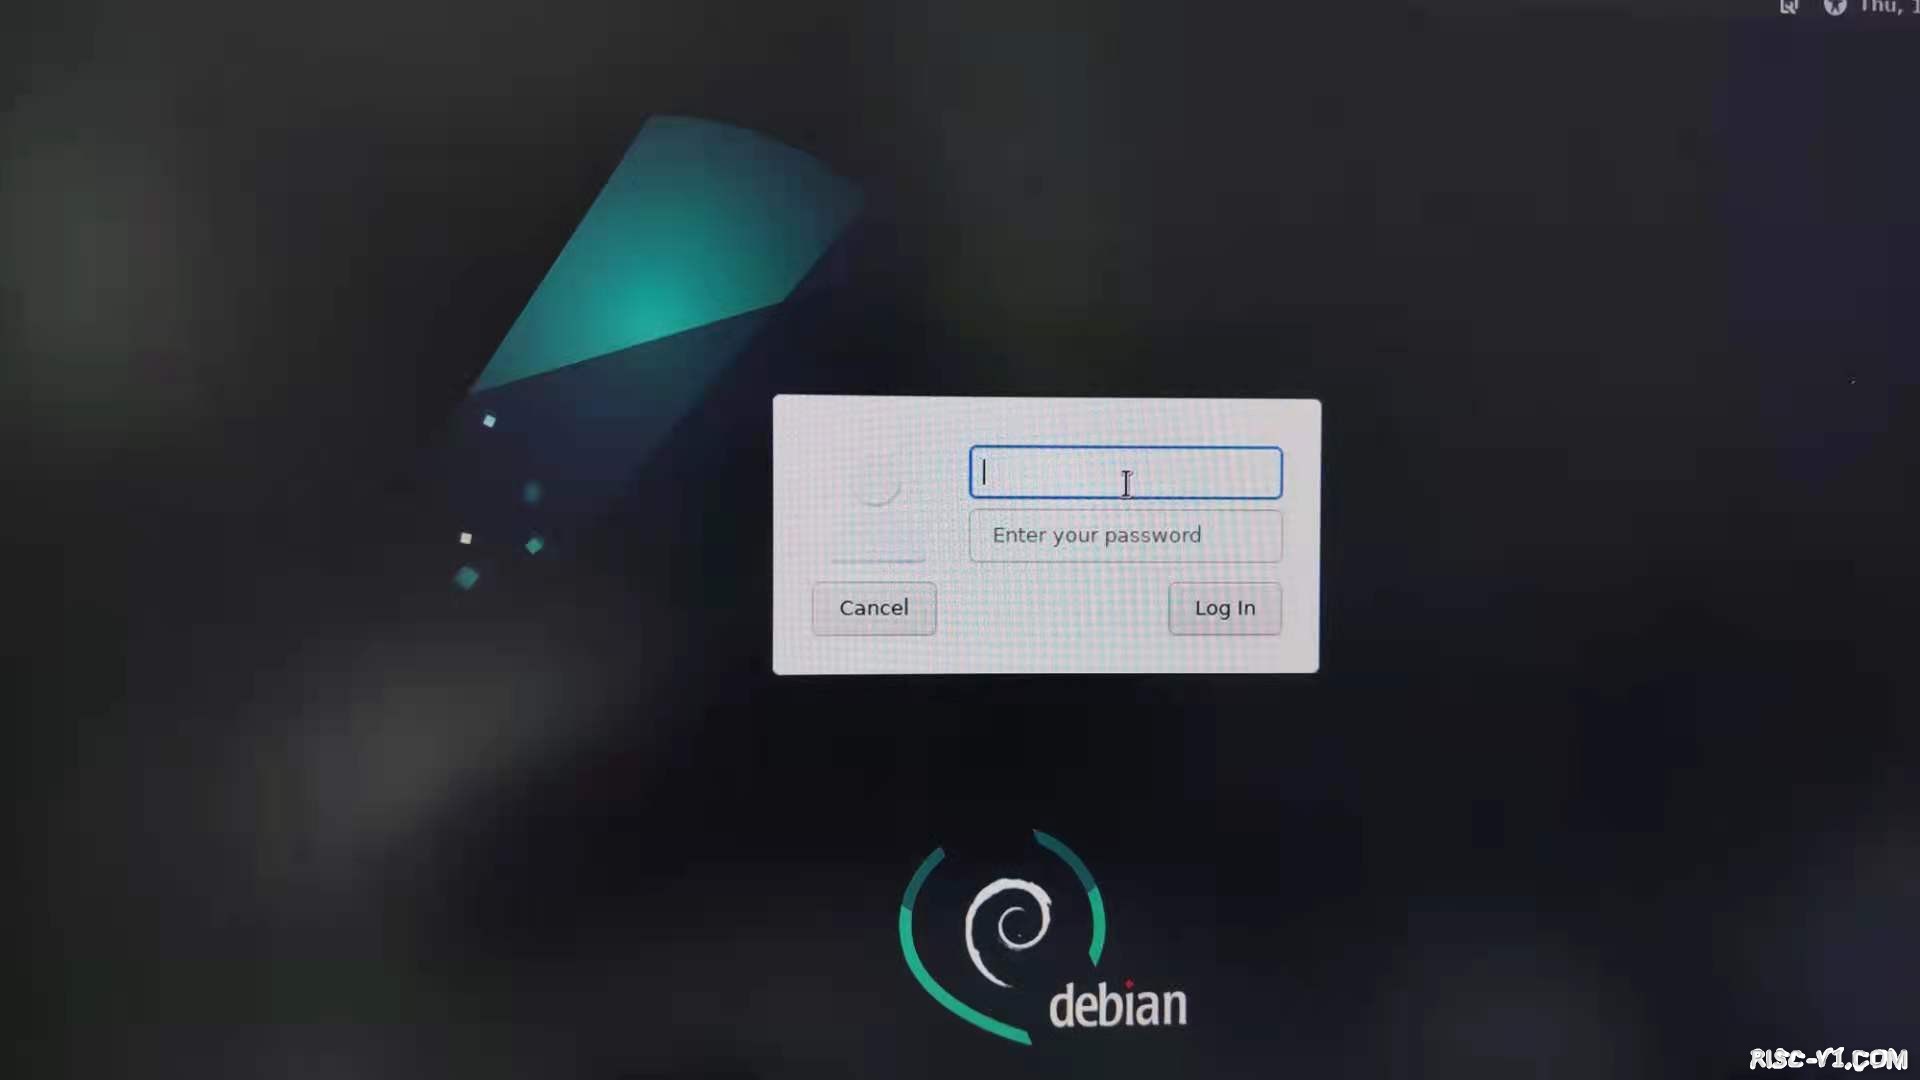 全志D1 芯片及应用-哪吒系列文章之13——Debian by PerfXLabrisc-v单片机中文社区(2)